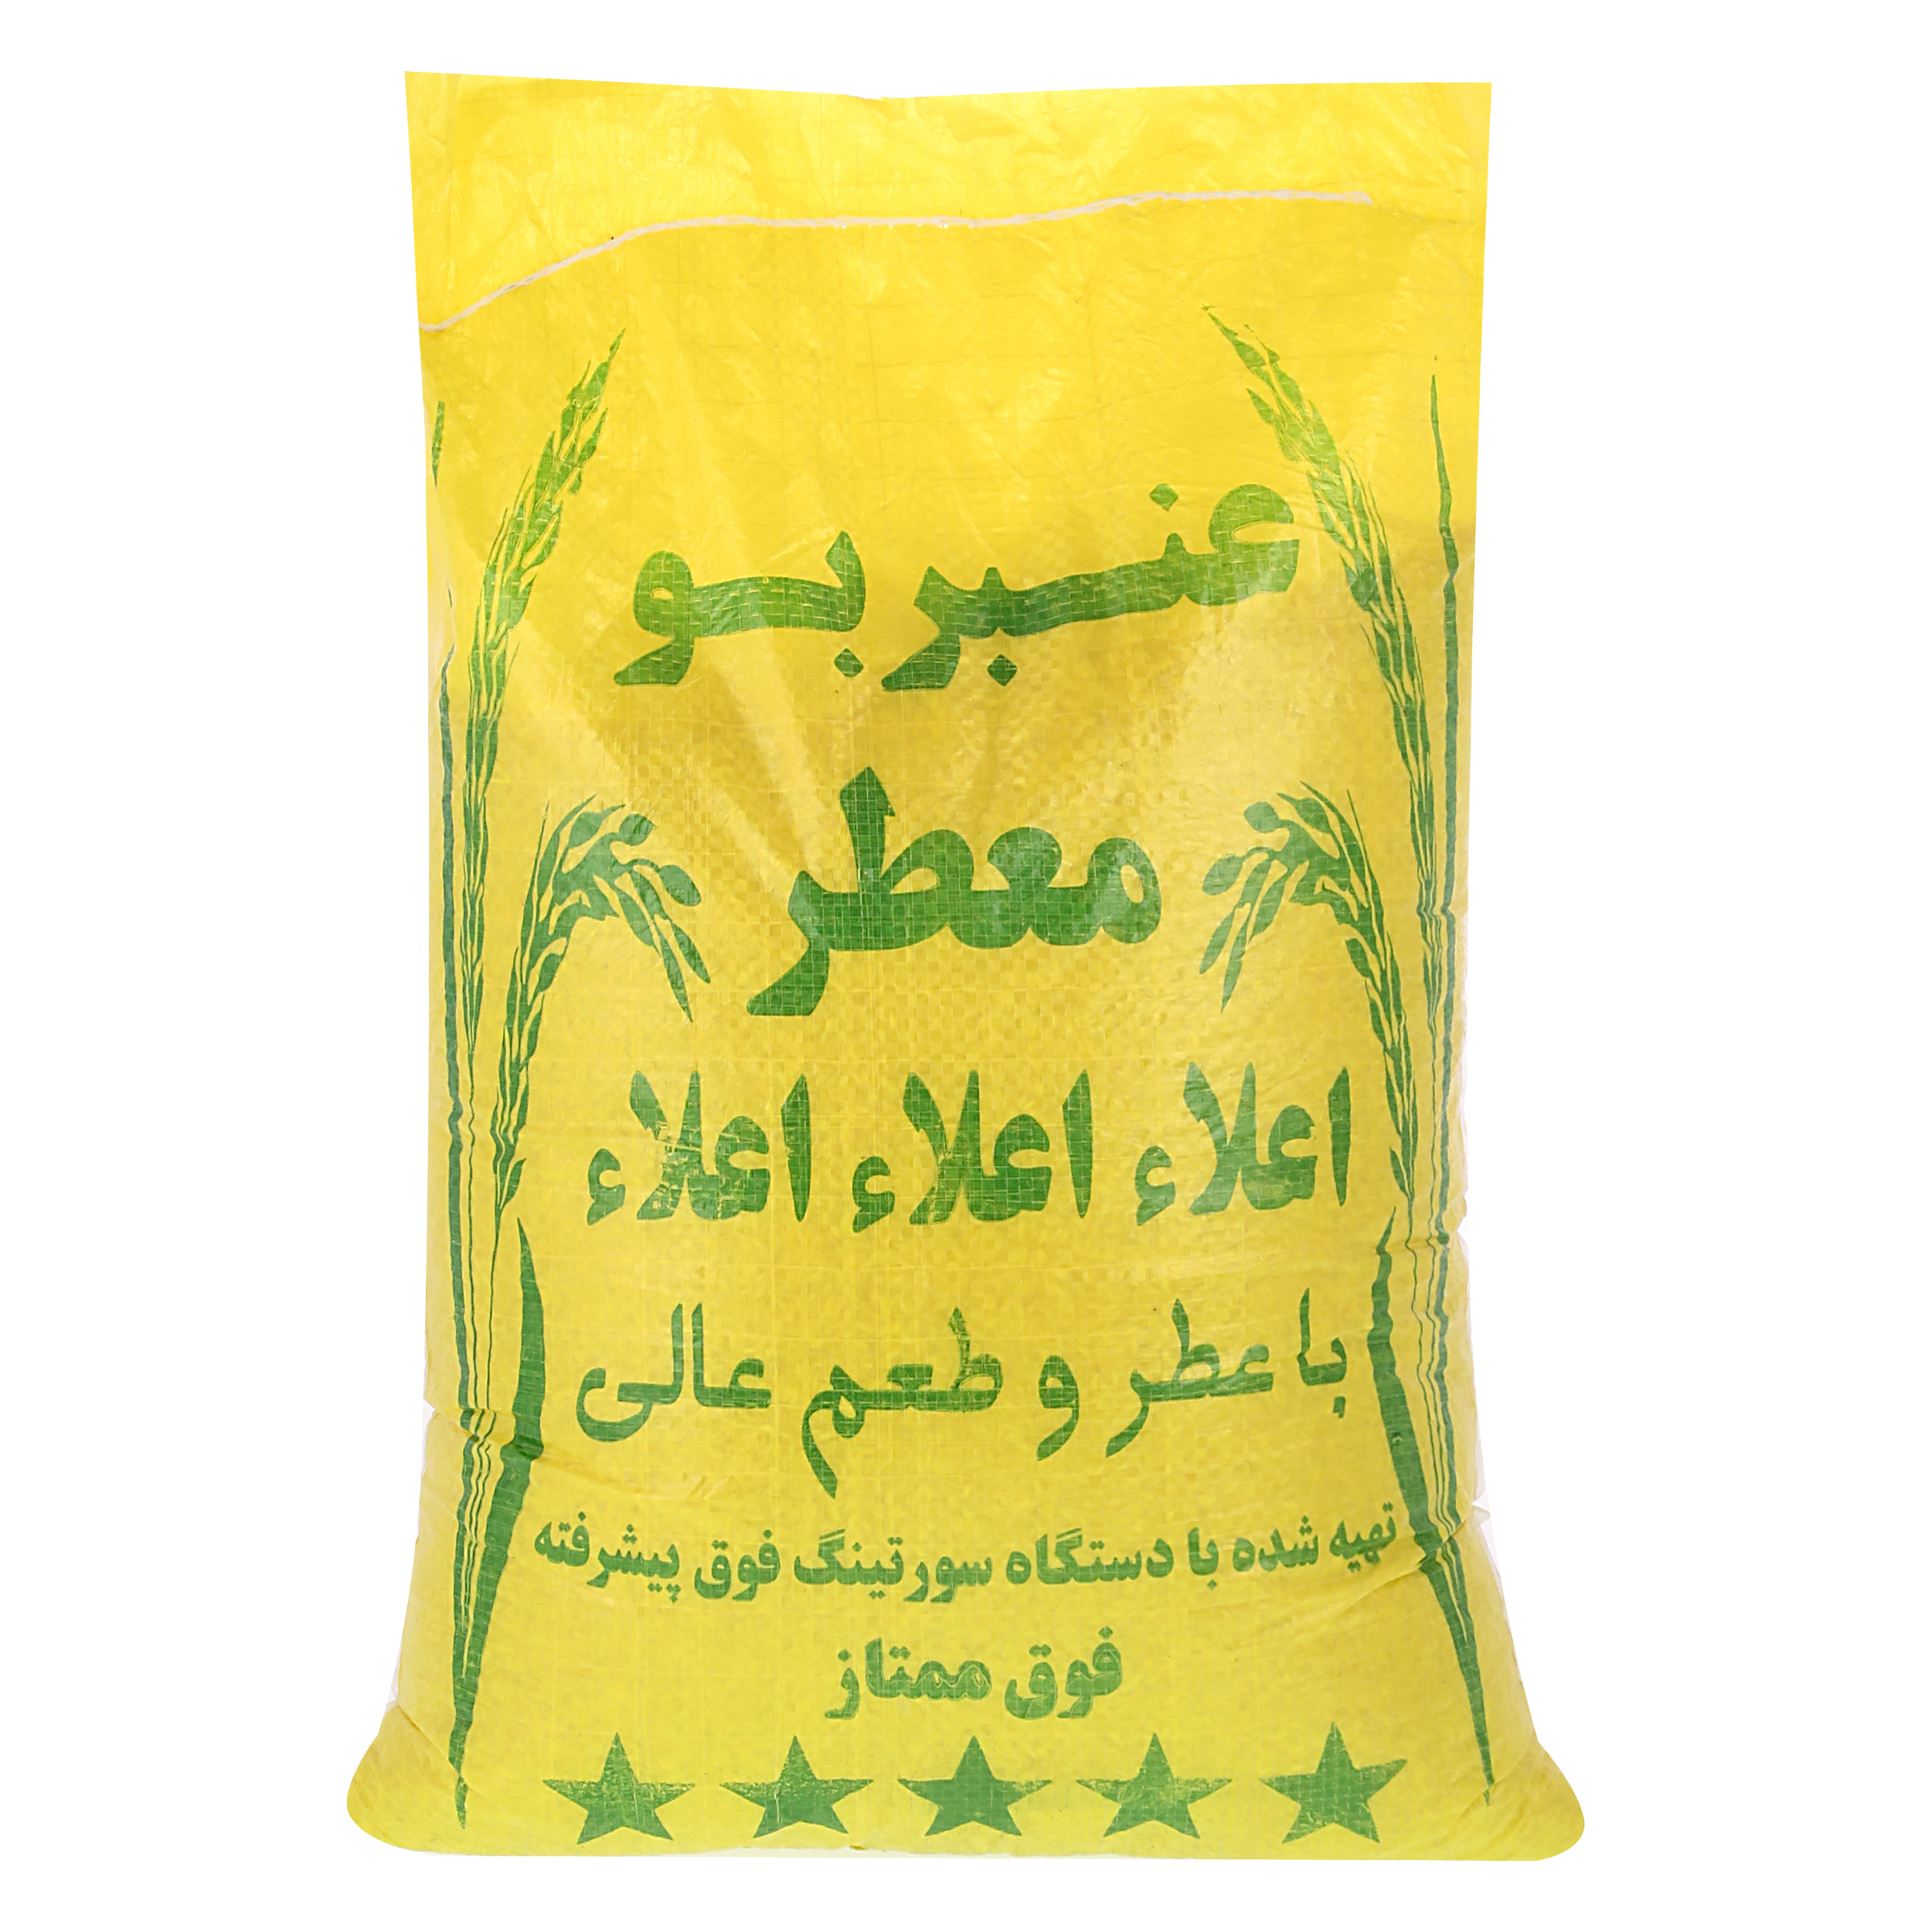 نکته خرید - قیمت روز برنج ایرانی عنبربو فوق ممتاز - 10 کیلو گرم خرید